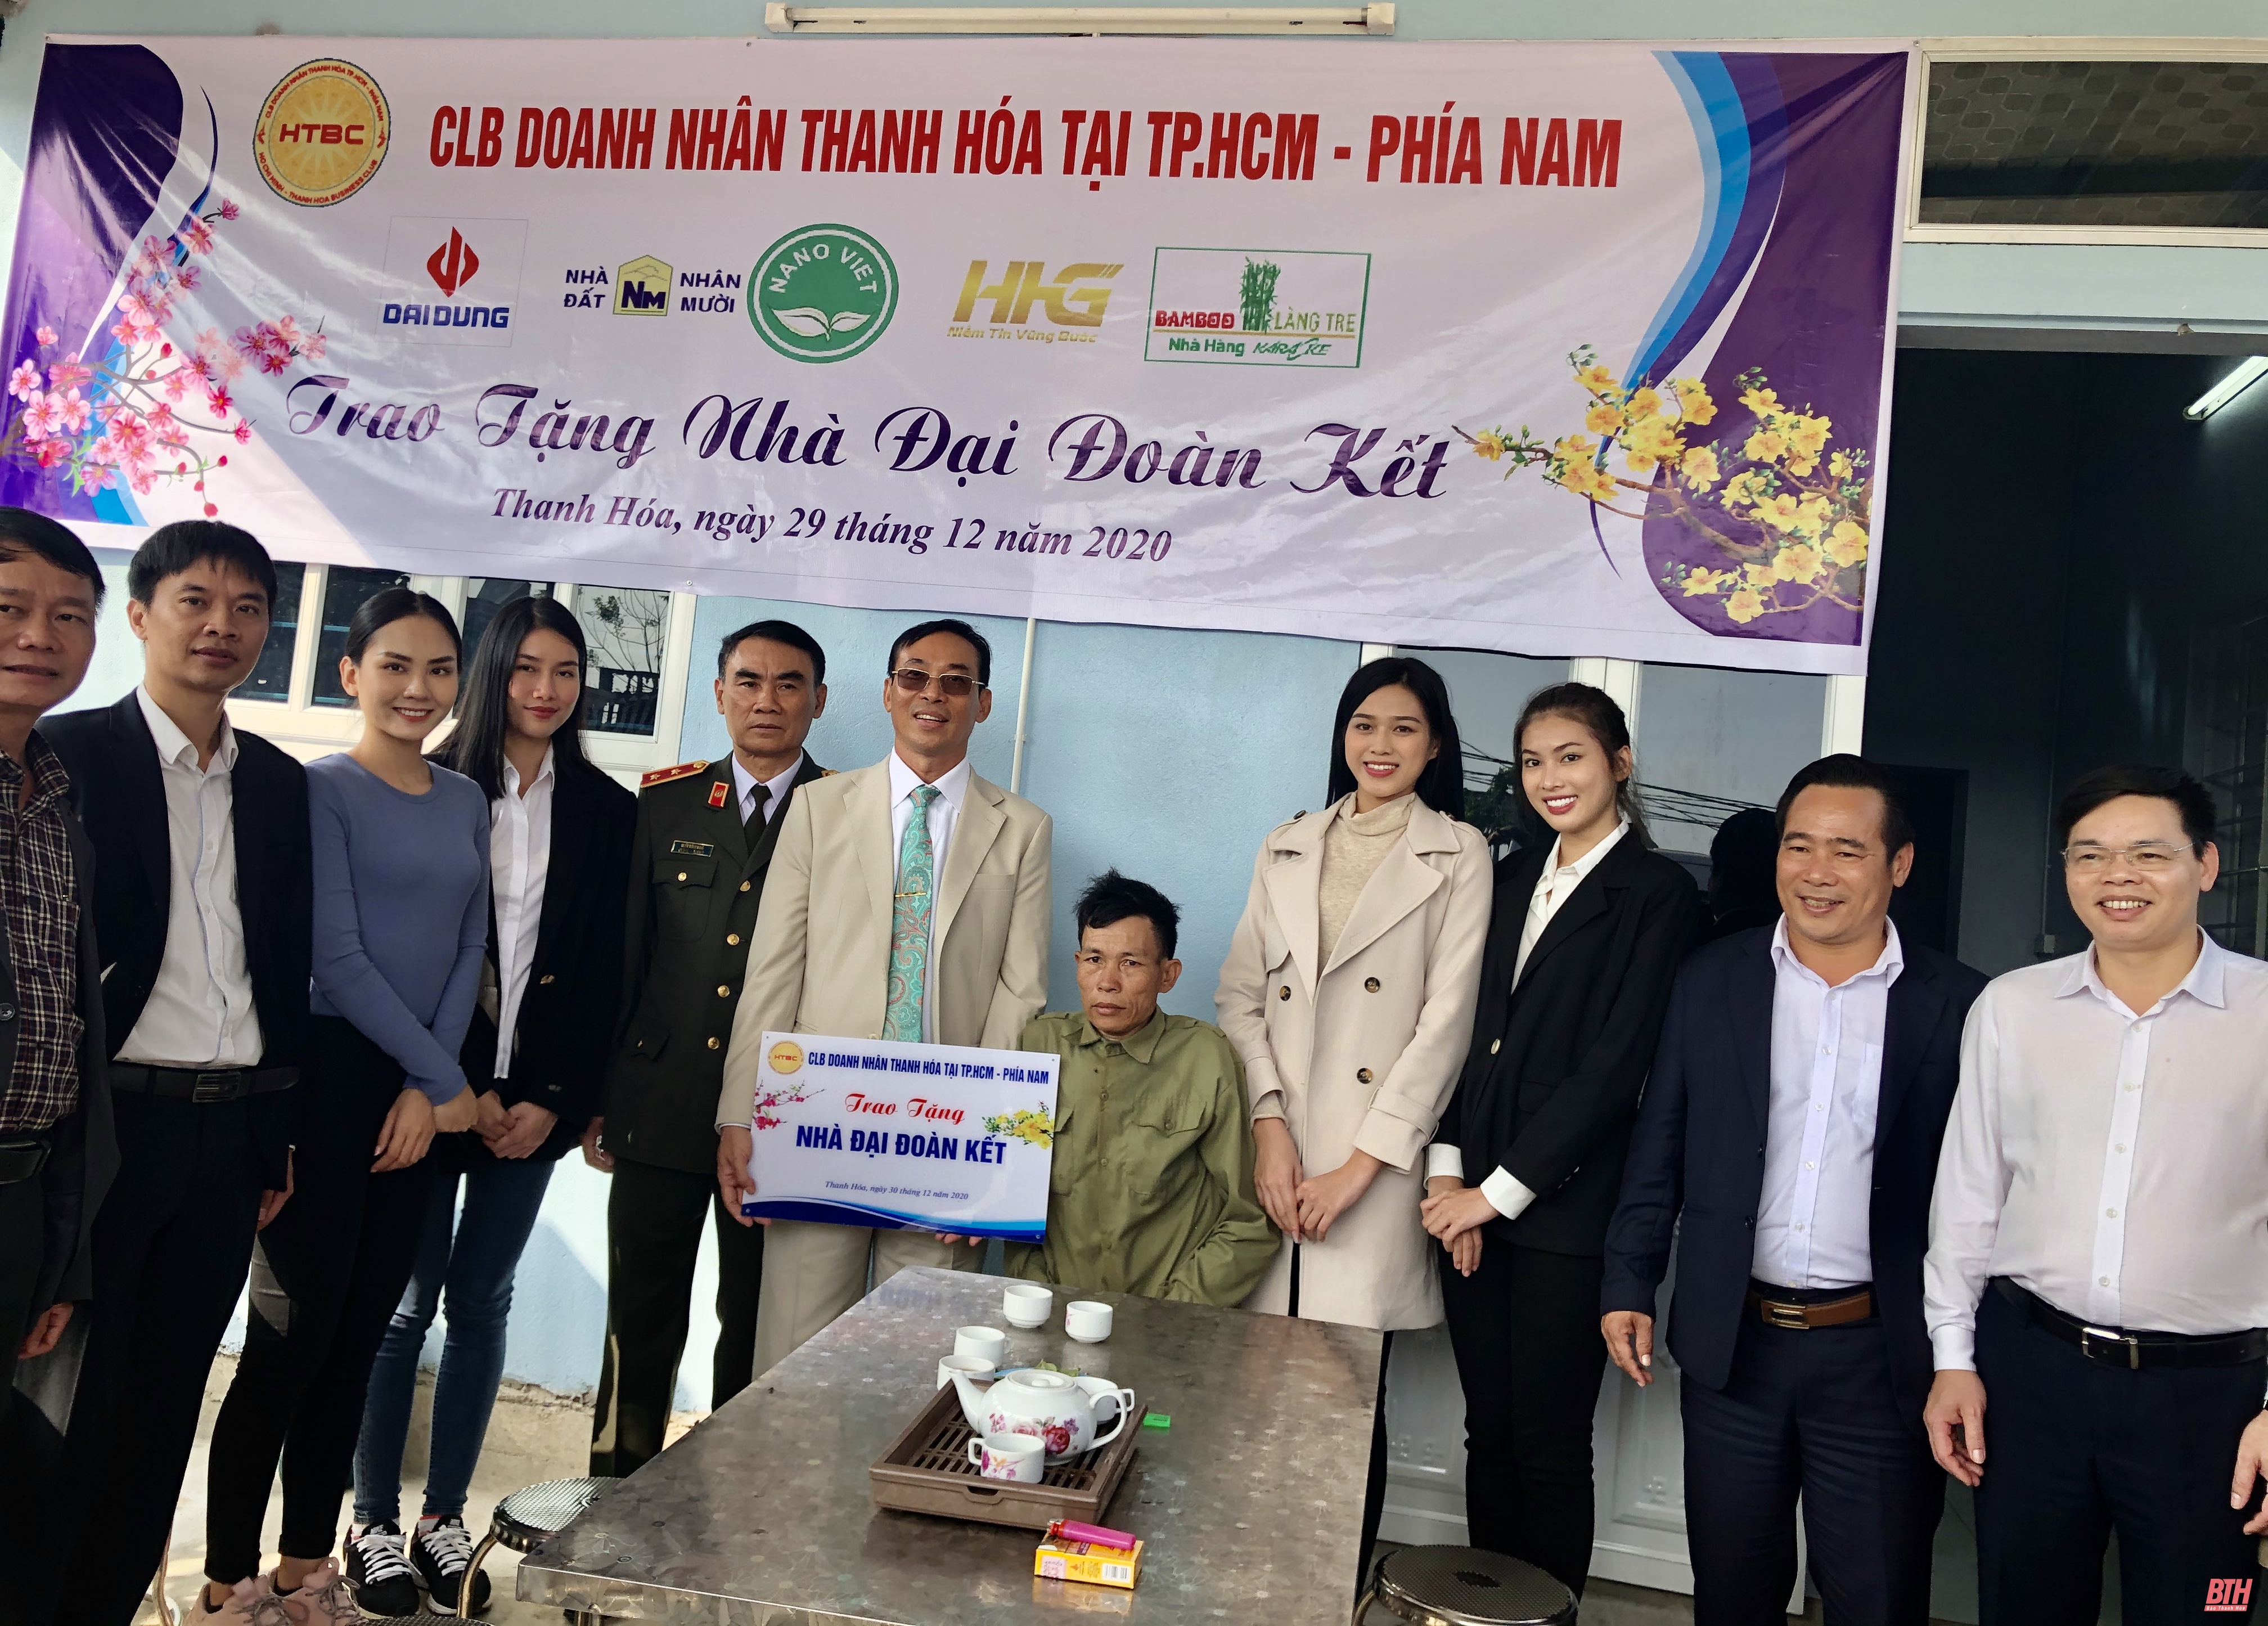 Câu lạc bộ Doanh nhân Thanh Hóa tại TP Hồ Chí Minh - phía Nam trao nhà đại đoàn kết cho hộ nghèo tại quê nhà